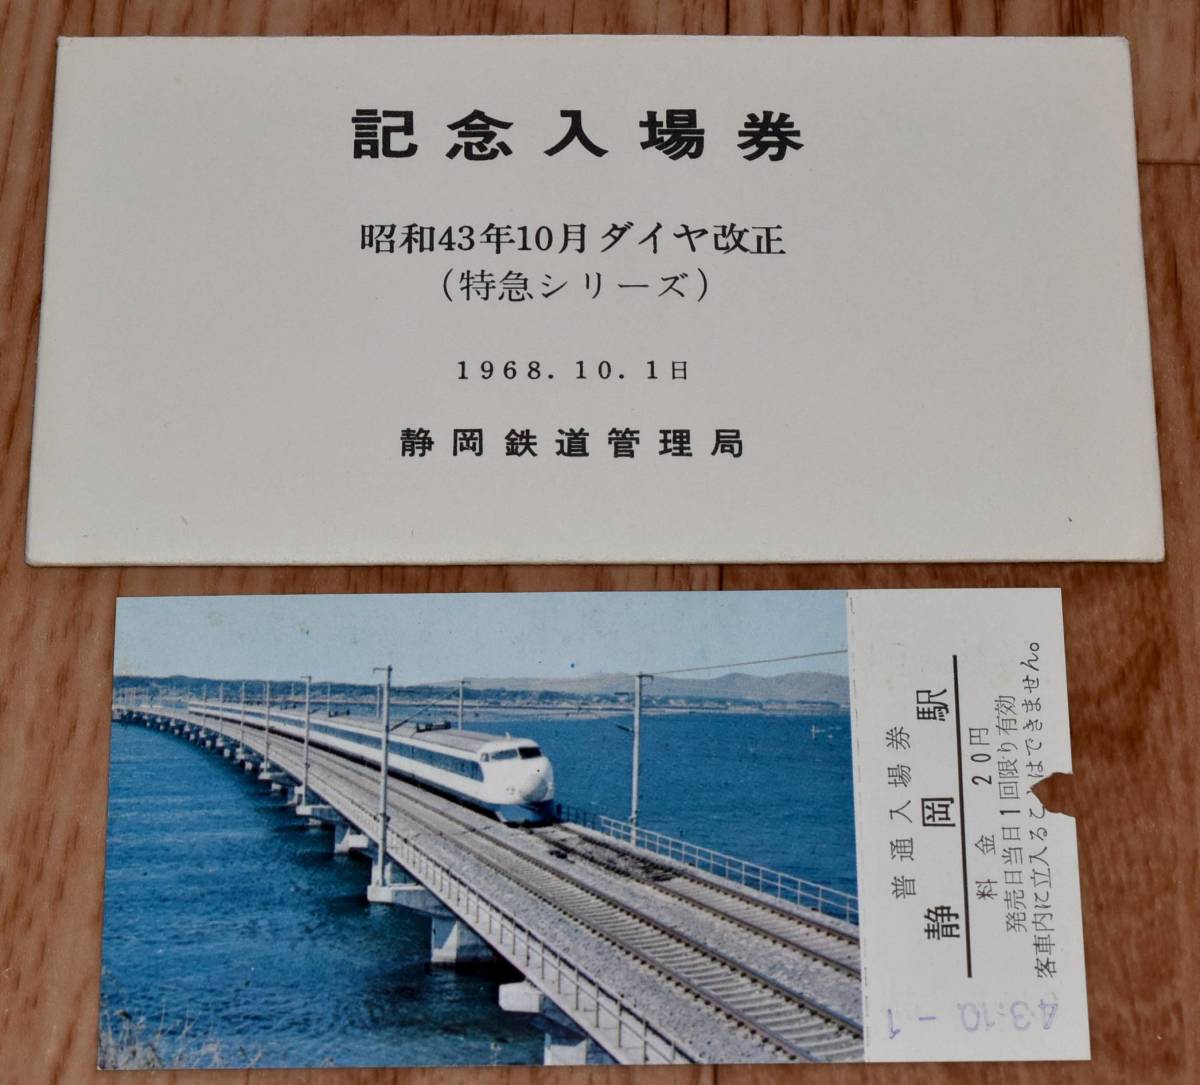 国鉄 静岡鉄道管理局 昭和43年10月ダイヤ改正記念入場券 特急シリーズ 